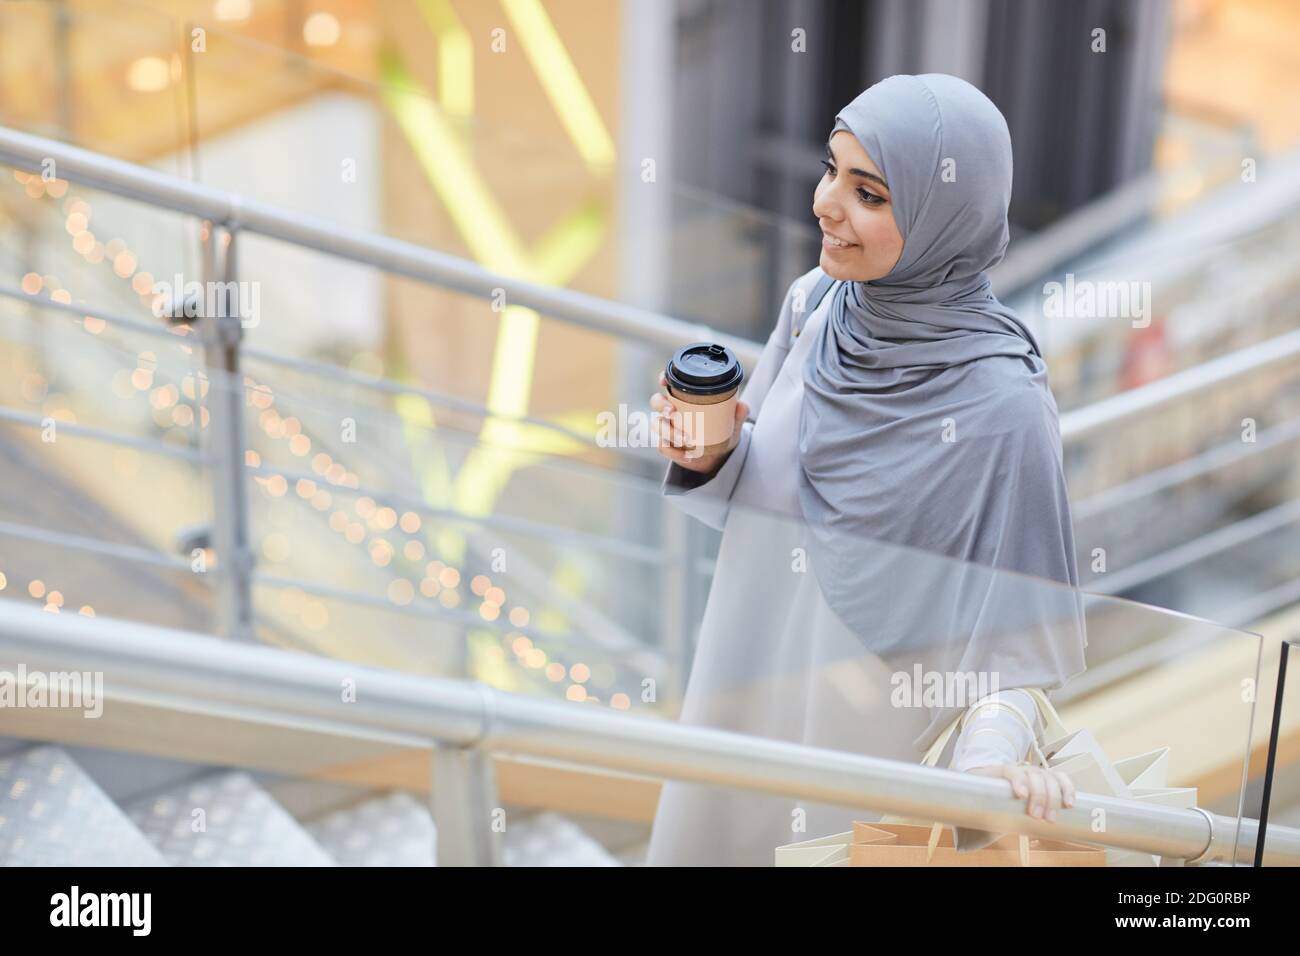 Porträt einer lächelnden Frau aus dem Nahen Osten, die Kaffeetasse hält, während sie im Einkaufszentrum die Treppe hinaufgeht und Platz kopiert Stockfoto